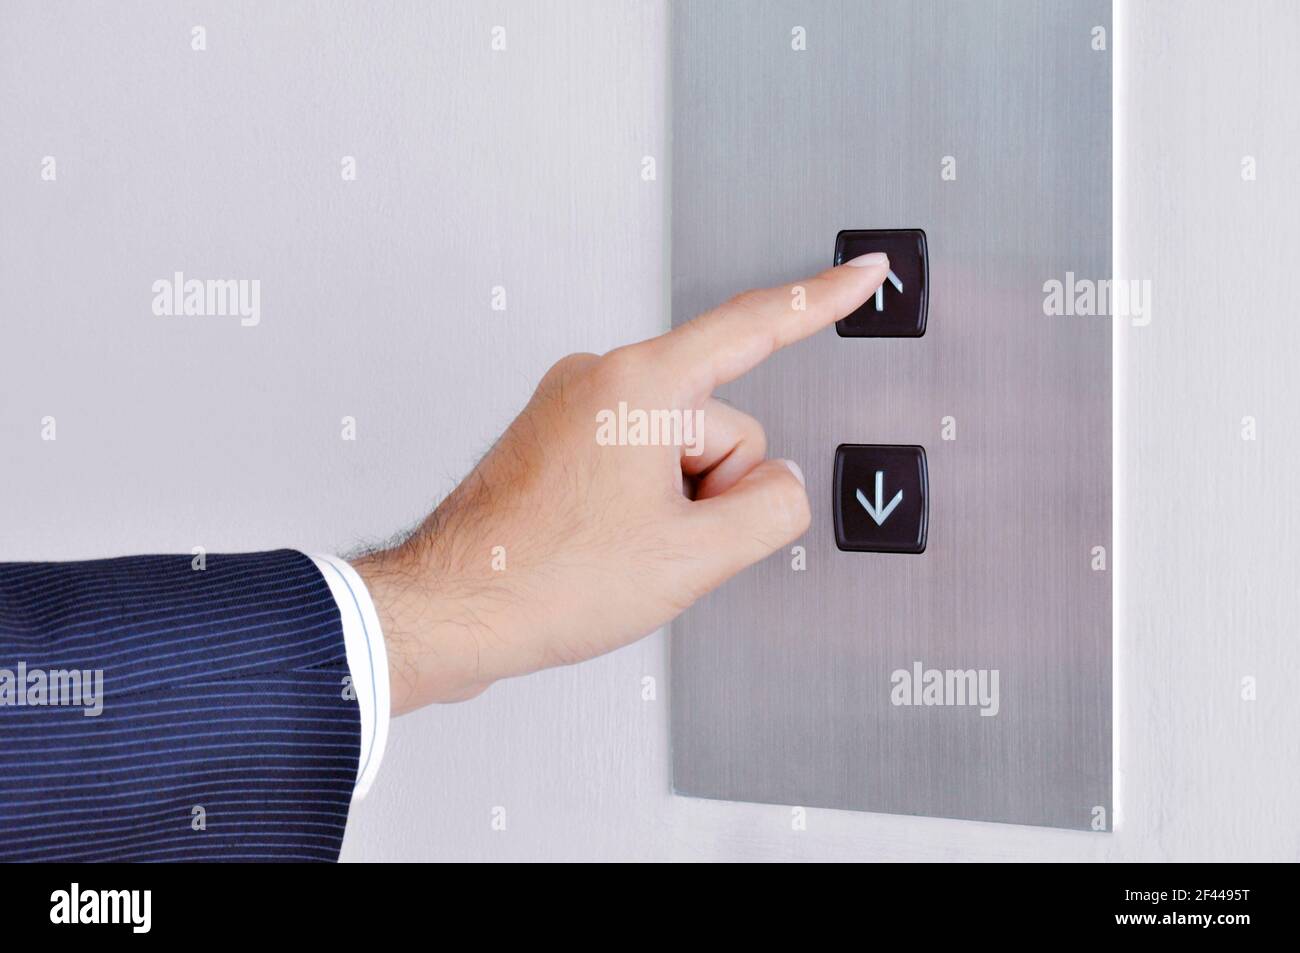 Businessman mano tocando la señal de subida en el panel de control de elevación Foto de stock